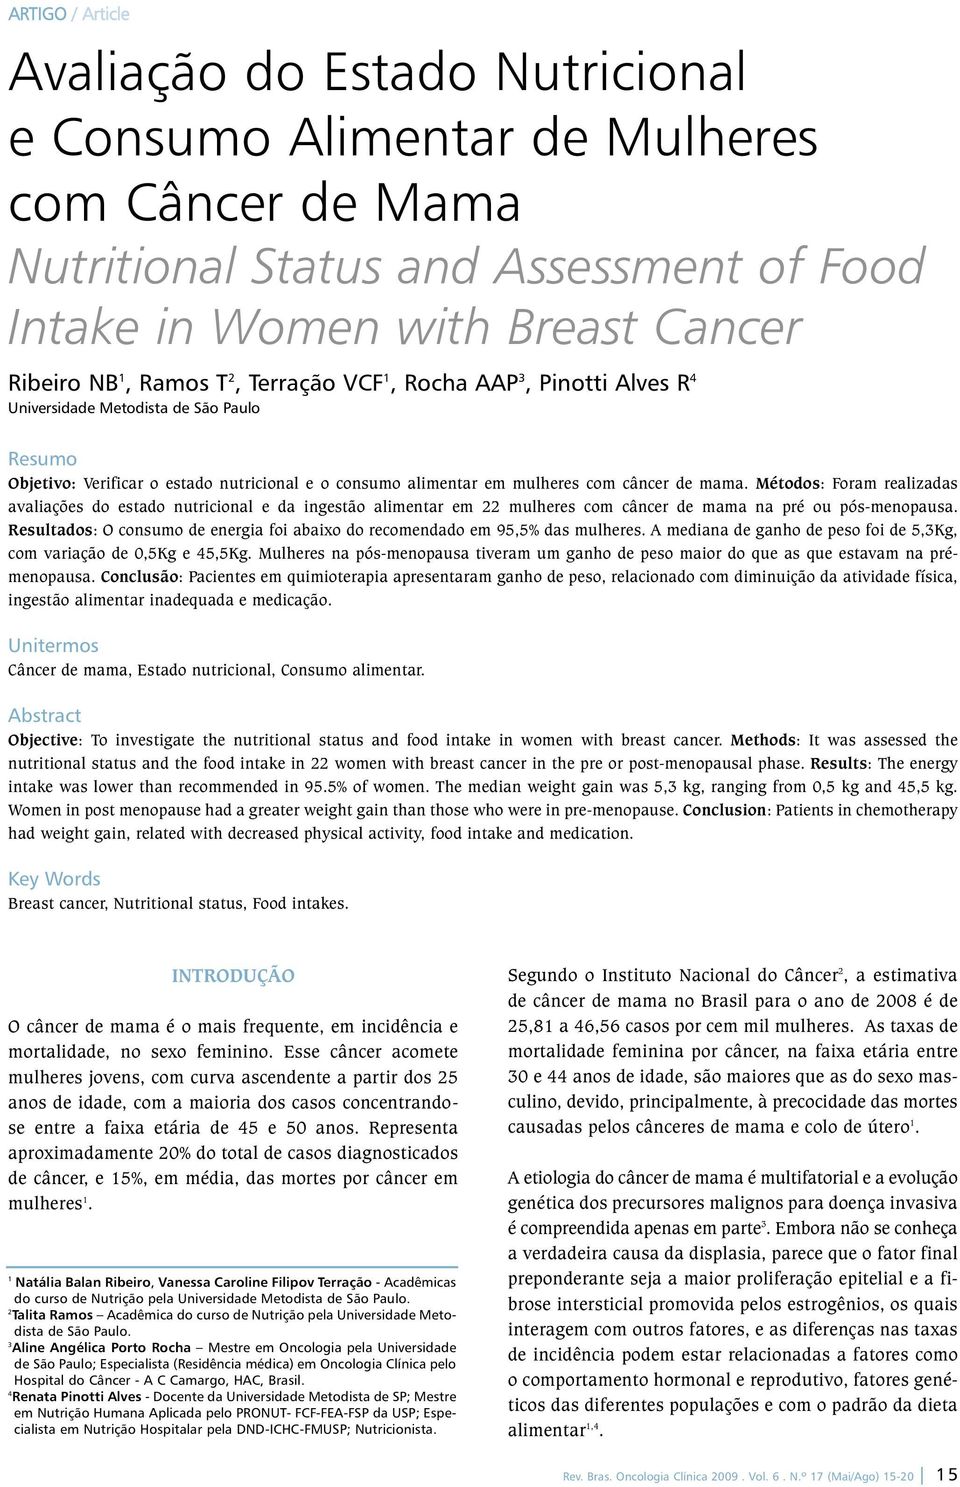 Métodos: Foram realizadas avaliações do estado nutricional e da ingestão alimentar em 22 mulheres com câncer de mama na pré ou pósmenopausa.